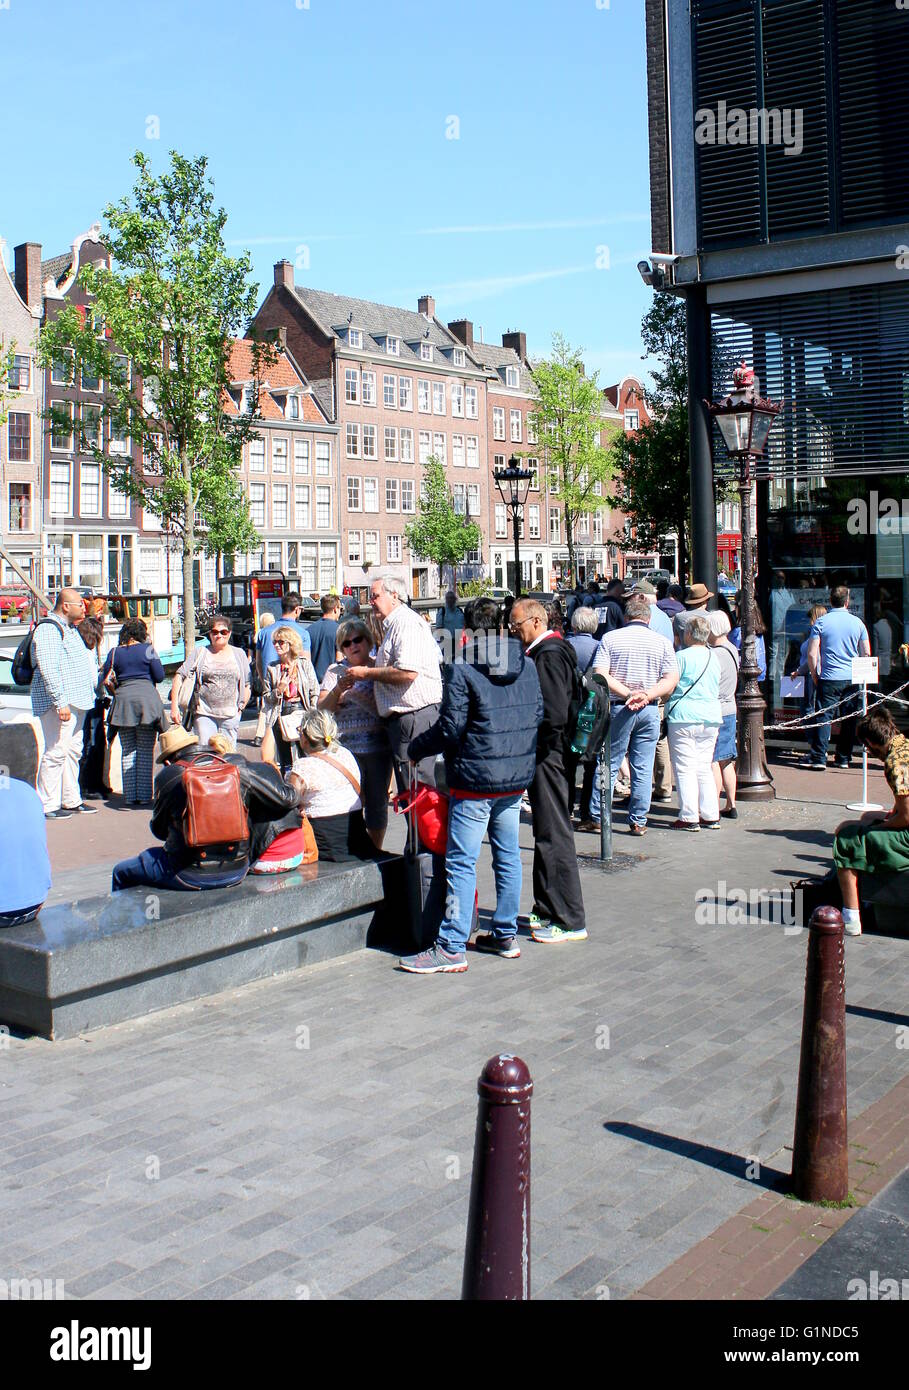 Gruppe von ausländischen Touristen warten auf das Anne Frankhuis - Anne-Frank-Haus, Prinsengracht Kanal, Amsterdam betreten. Stockfoto